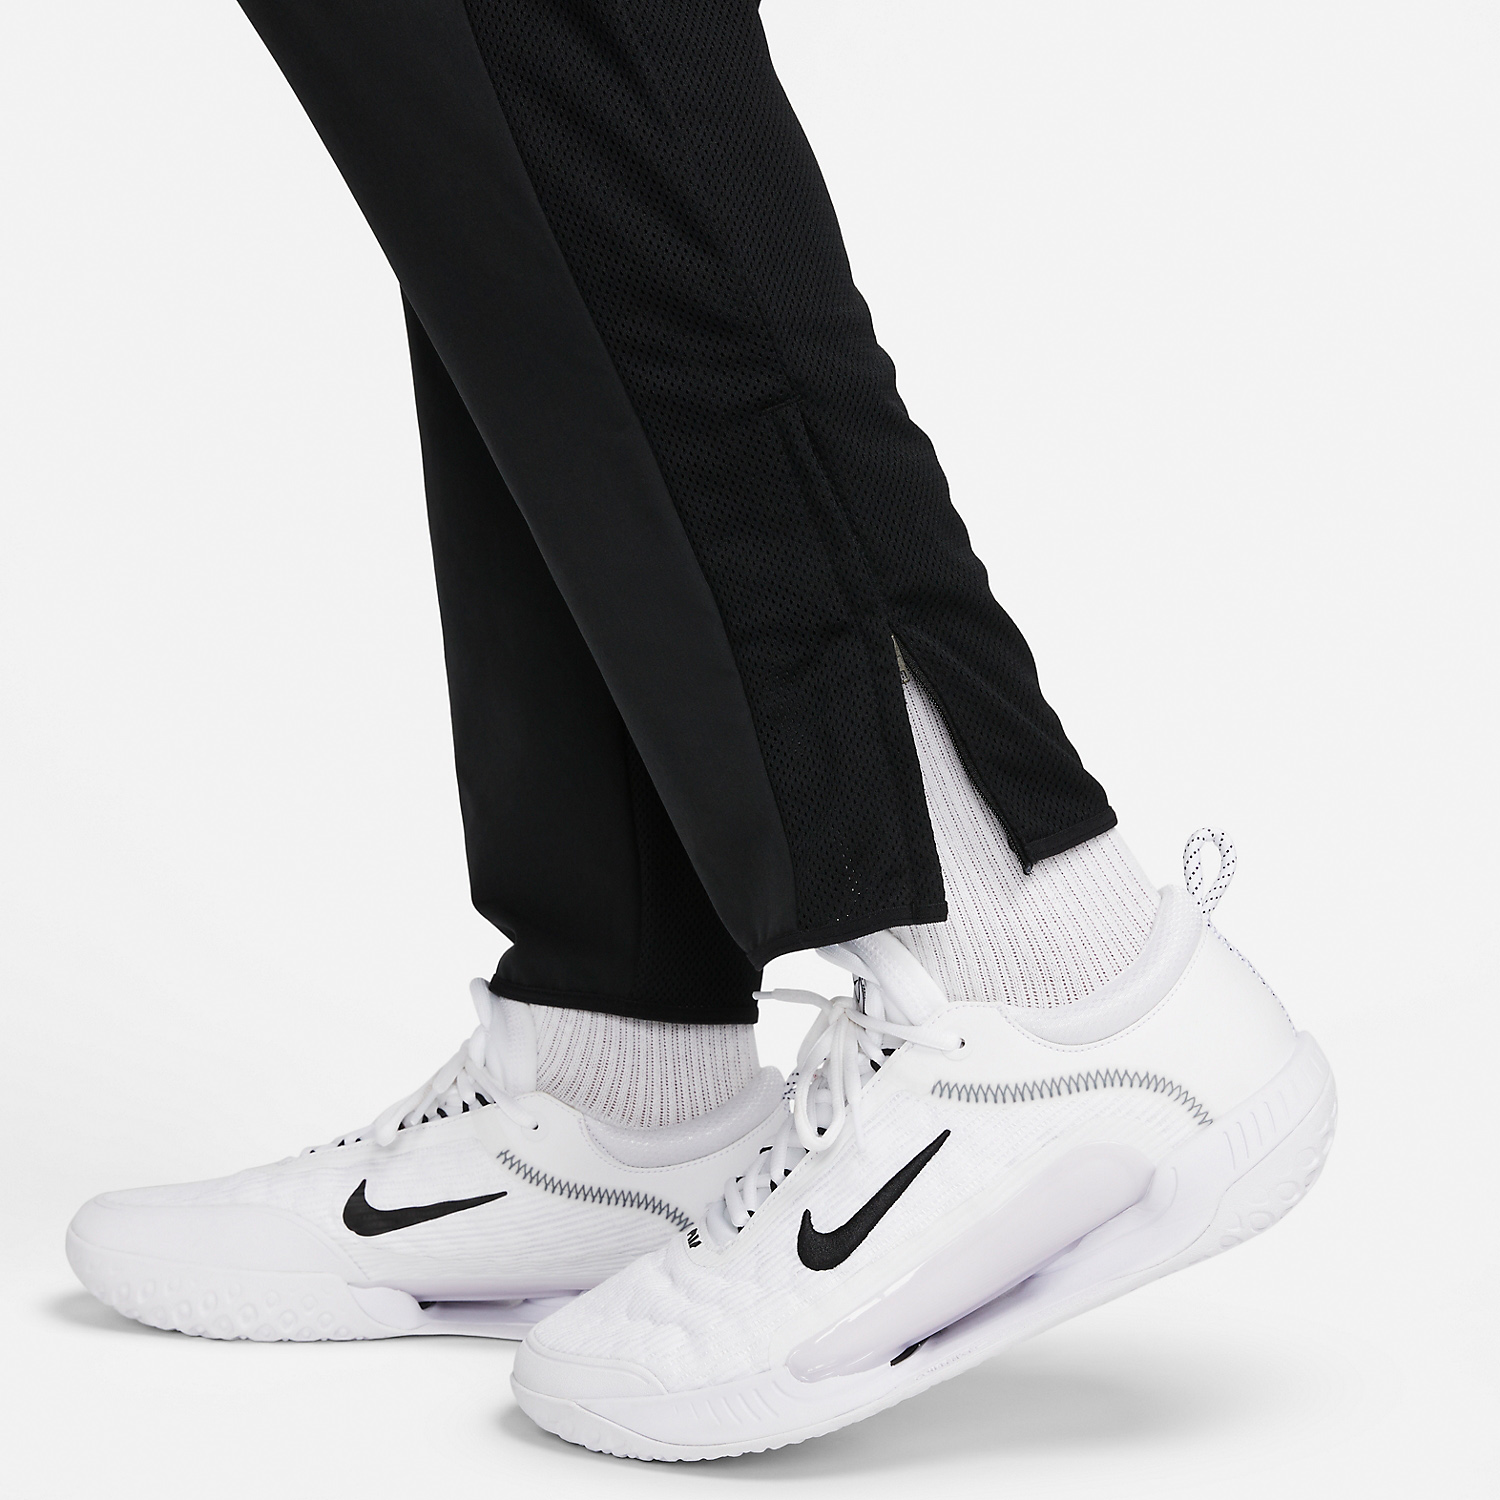 Nike Court Advantage Men's Tennis Pants - Green Abyss/White